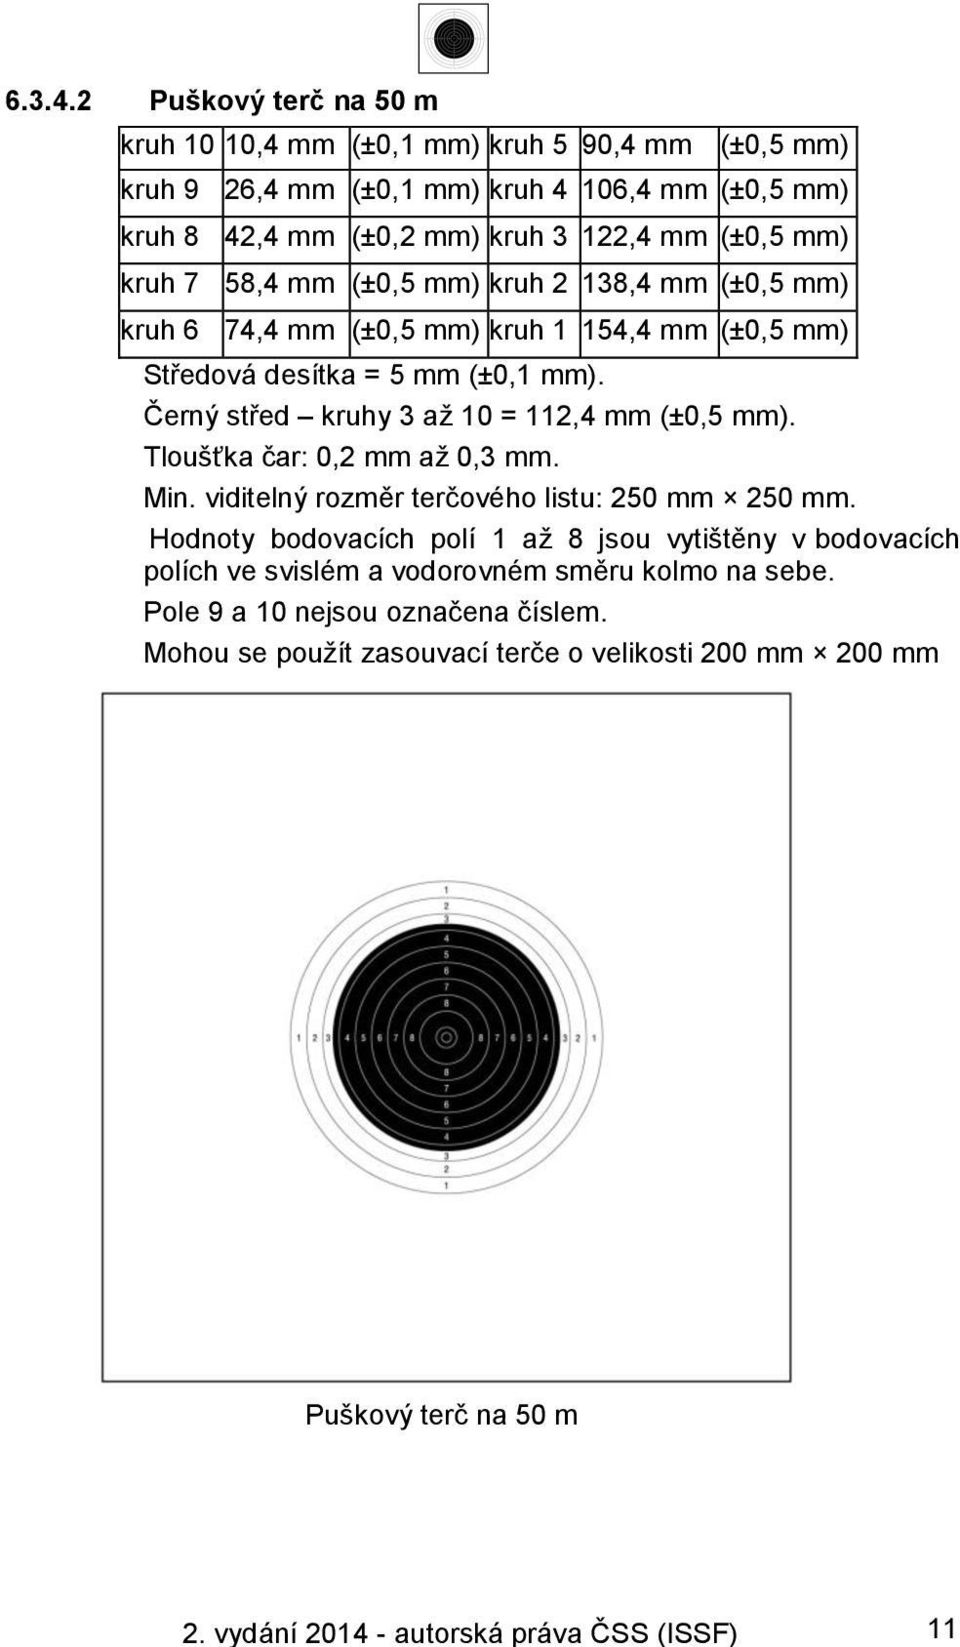 7 58,4 mm (±0,5 mm) kruh 2 138,4 mm (±0,5 mm) kruh 6 74,4 mm (±0,5 mm) kruh 1 154,4 mm (±0,5 mm) Středová desítka = 5 mm (±0,1 mm). Černý střed kruhy 3 až 10 = 112,4 mm (±0,5 mm).